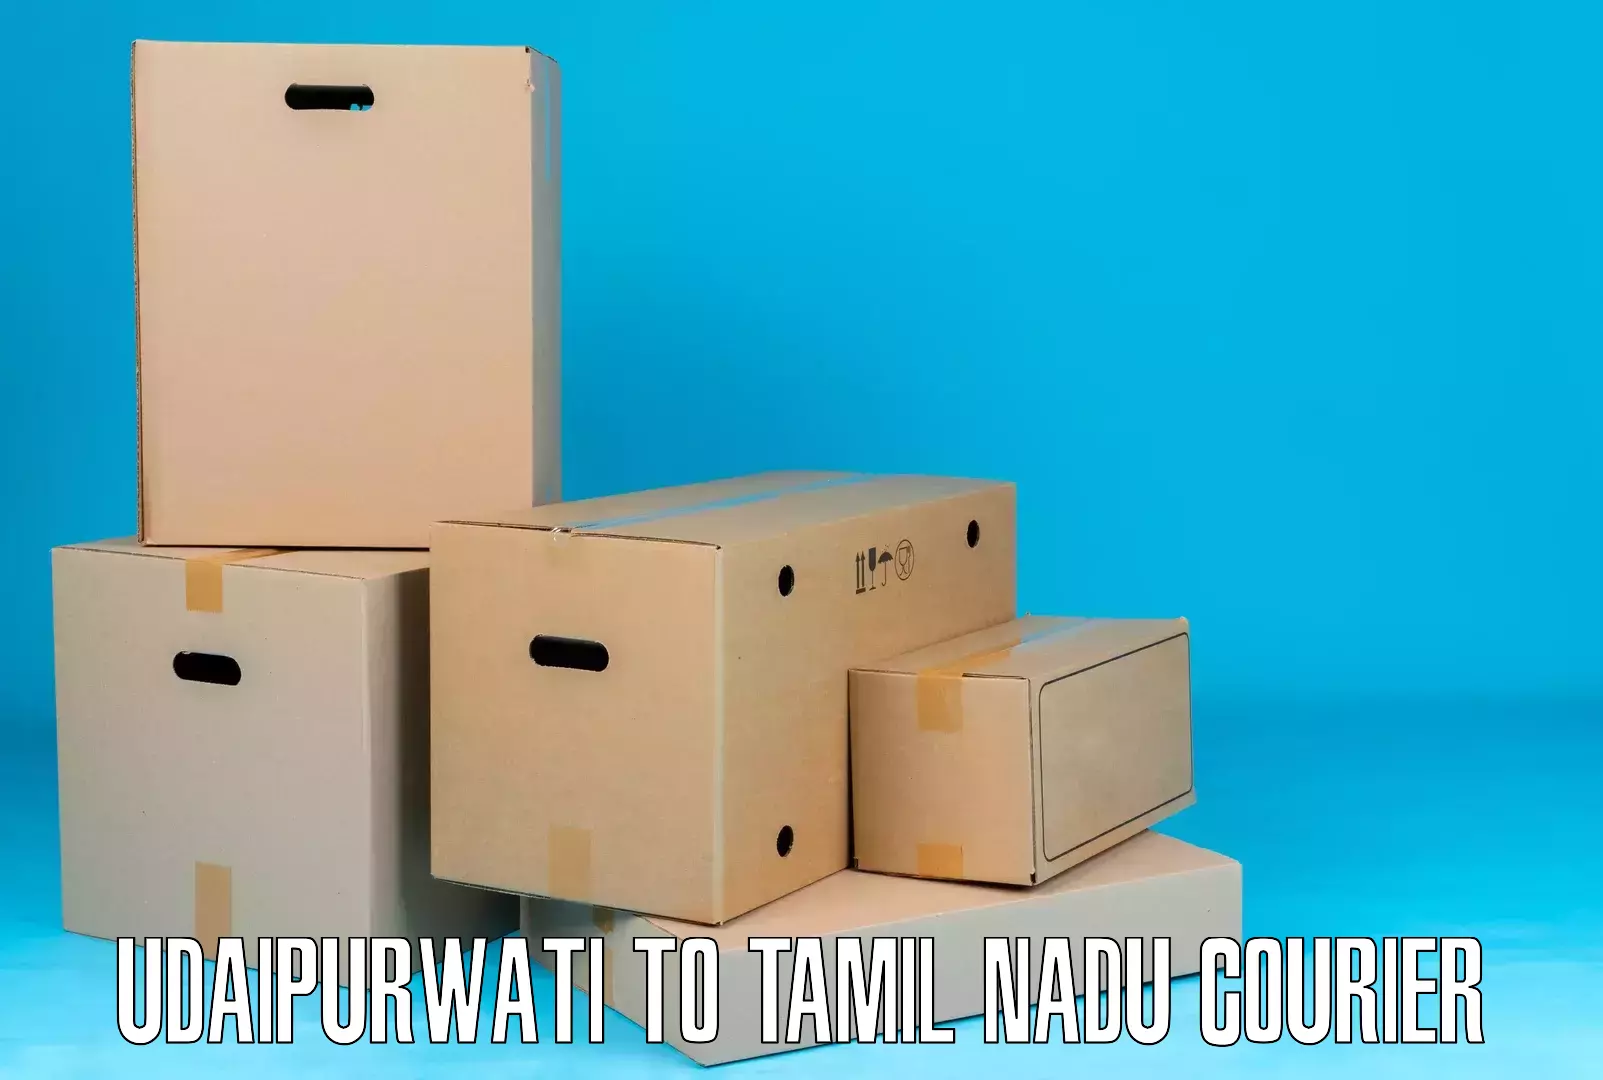 Modern delivery methods Udaipurwati to Tamil Nadu